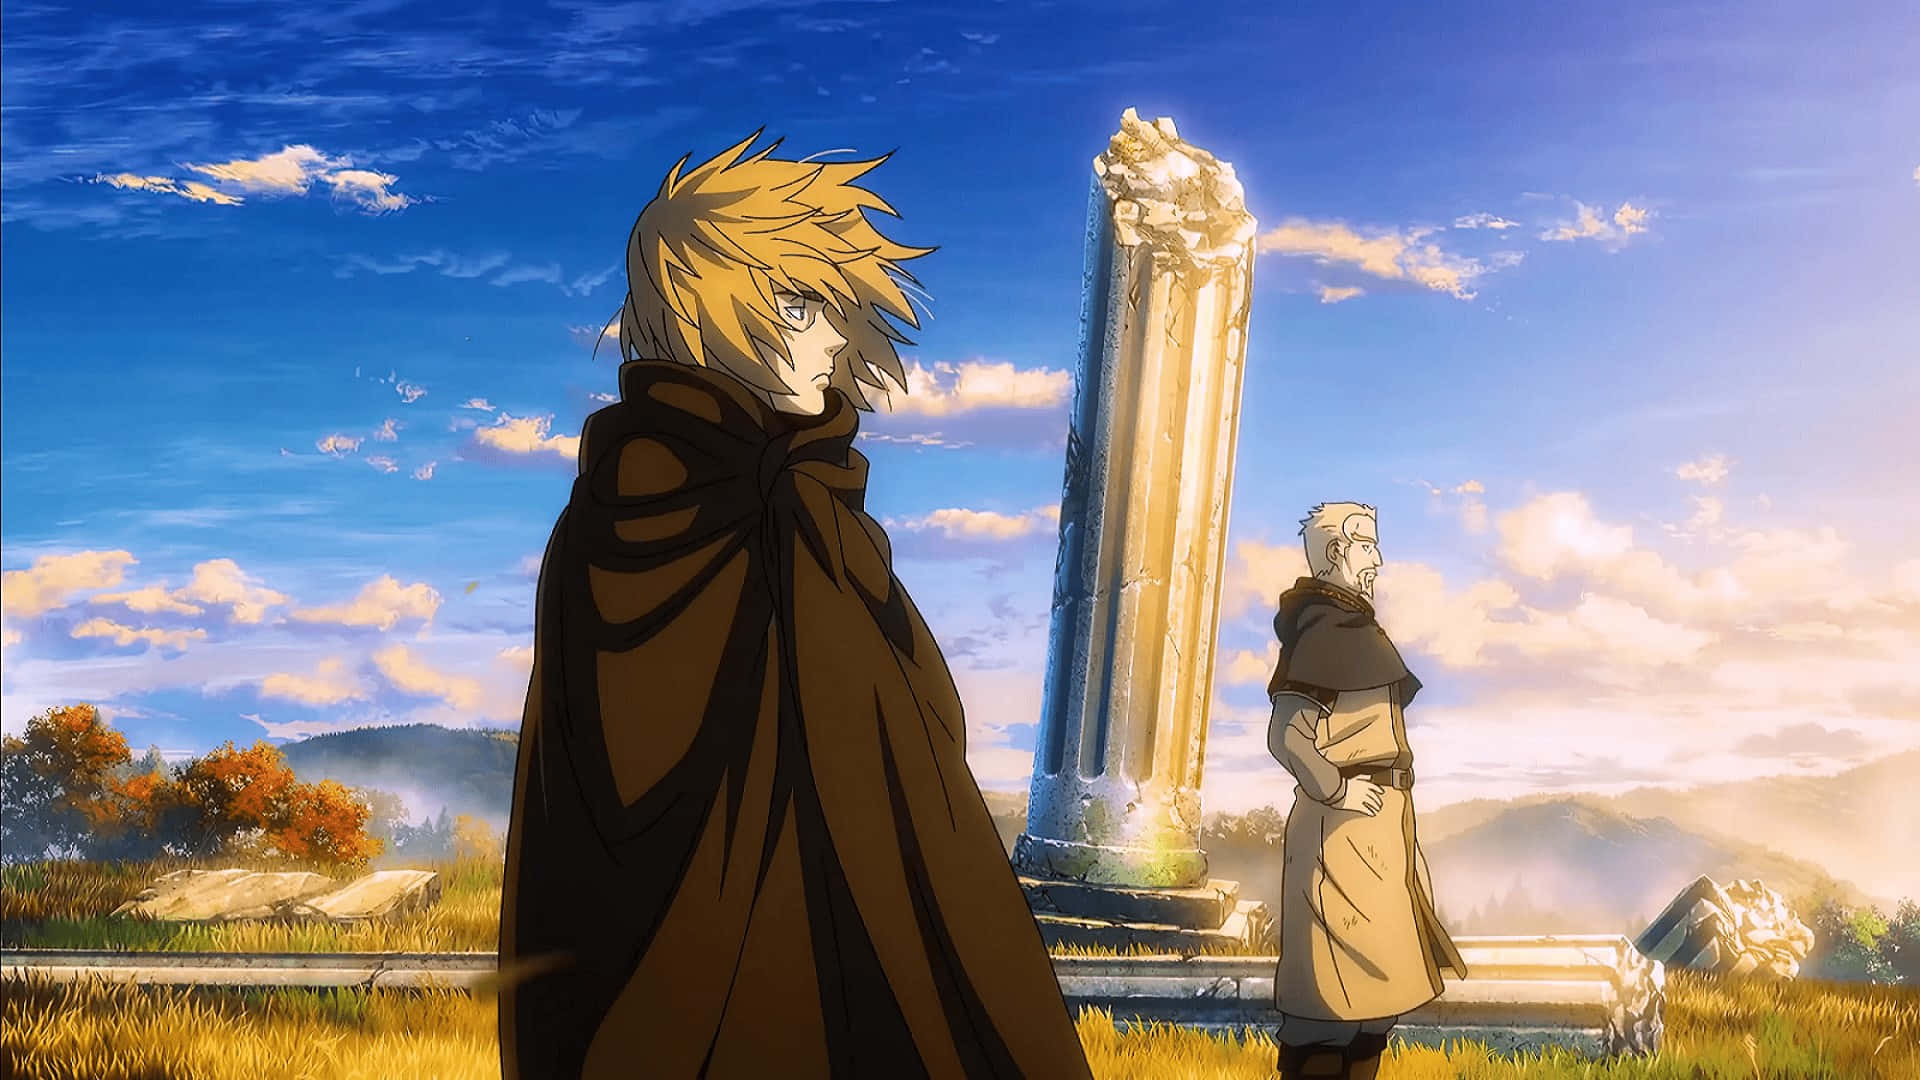 Thorfinn Standing Among Ruins Anime Scene Wallpaper